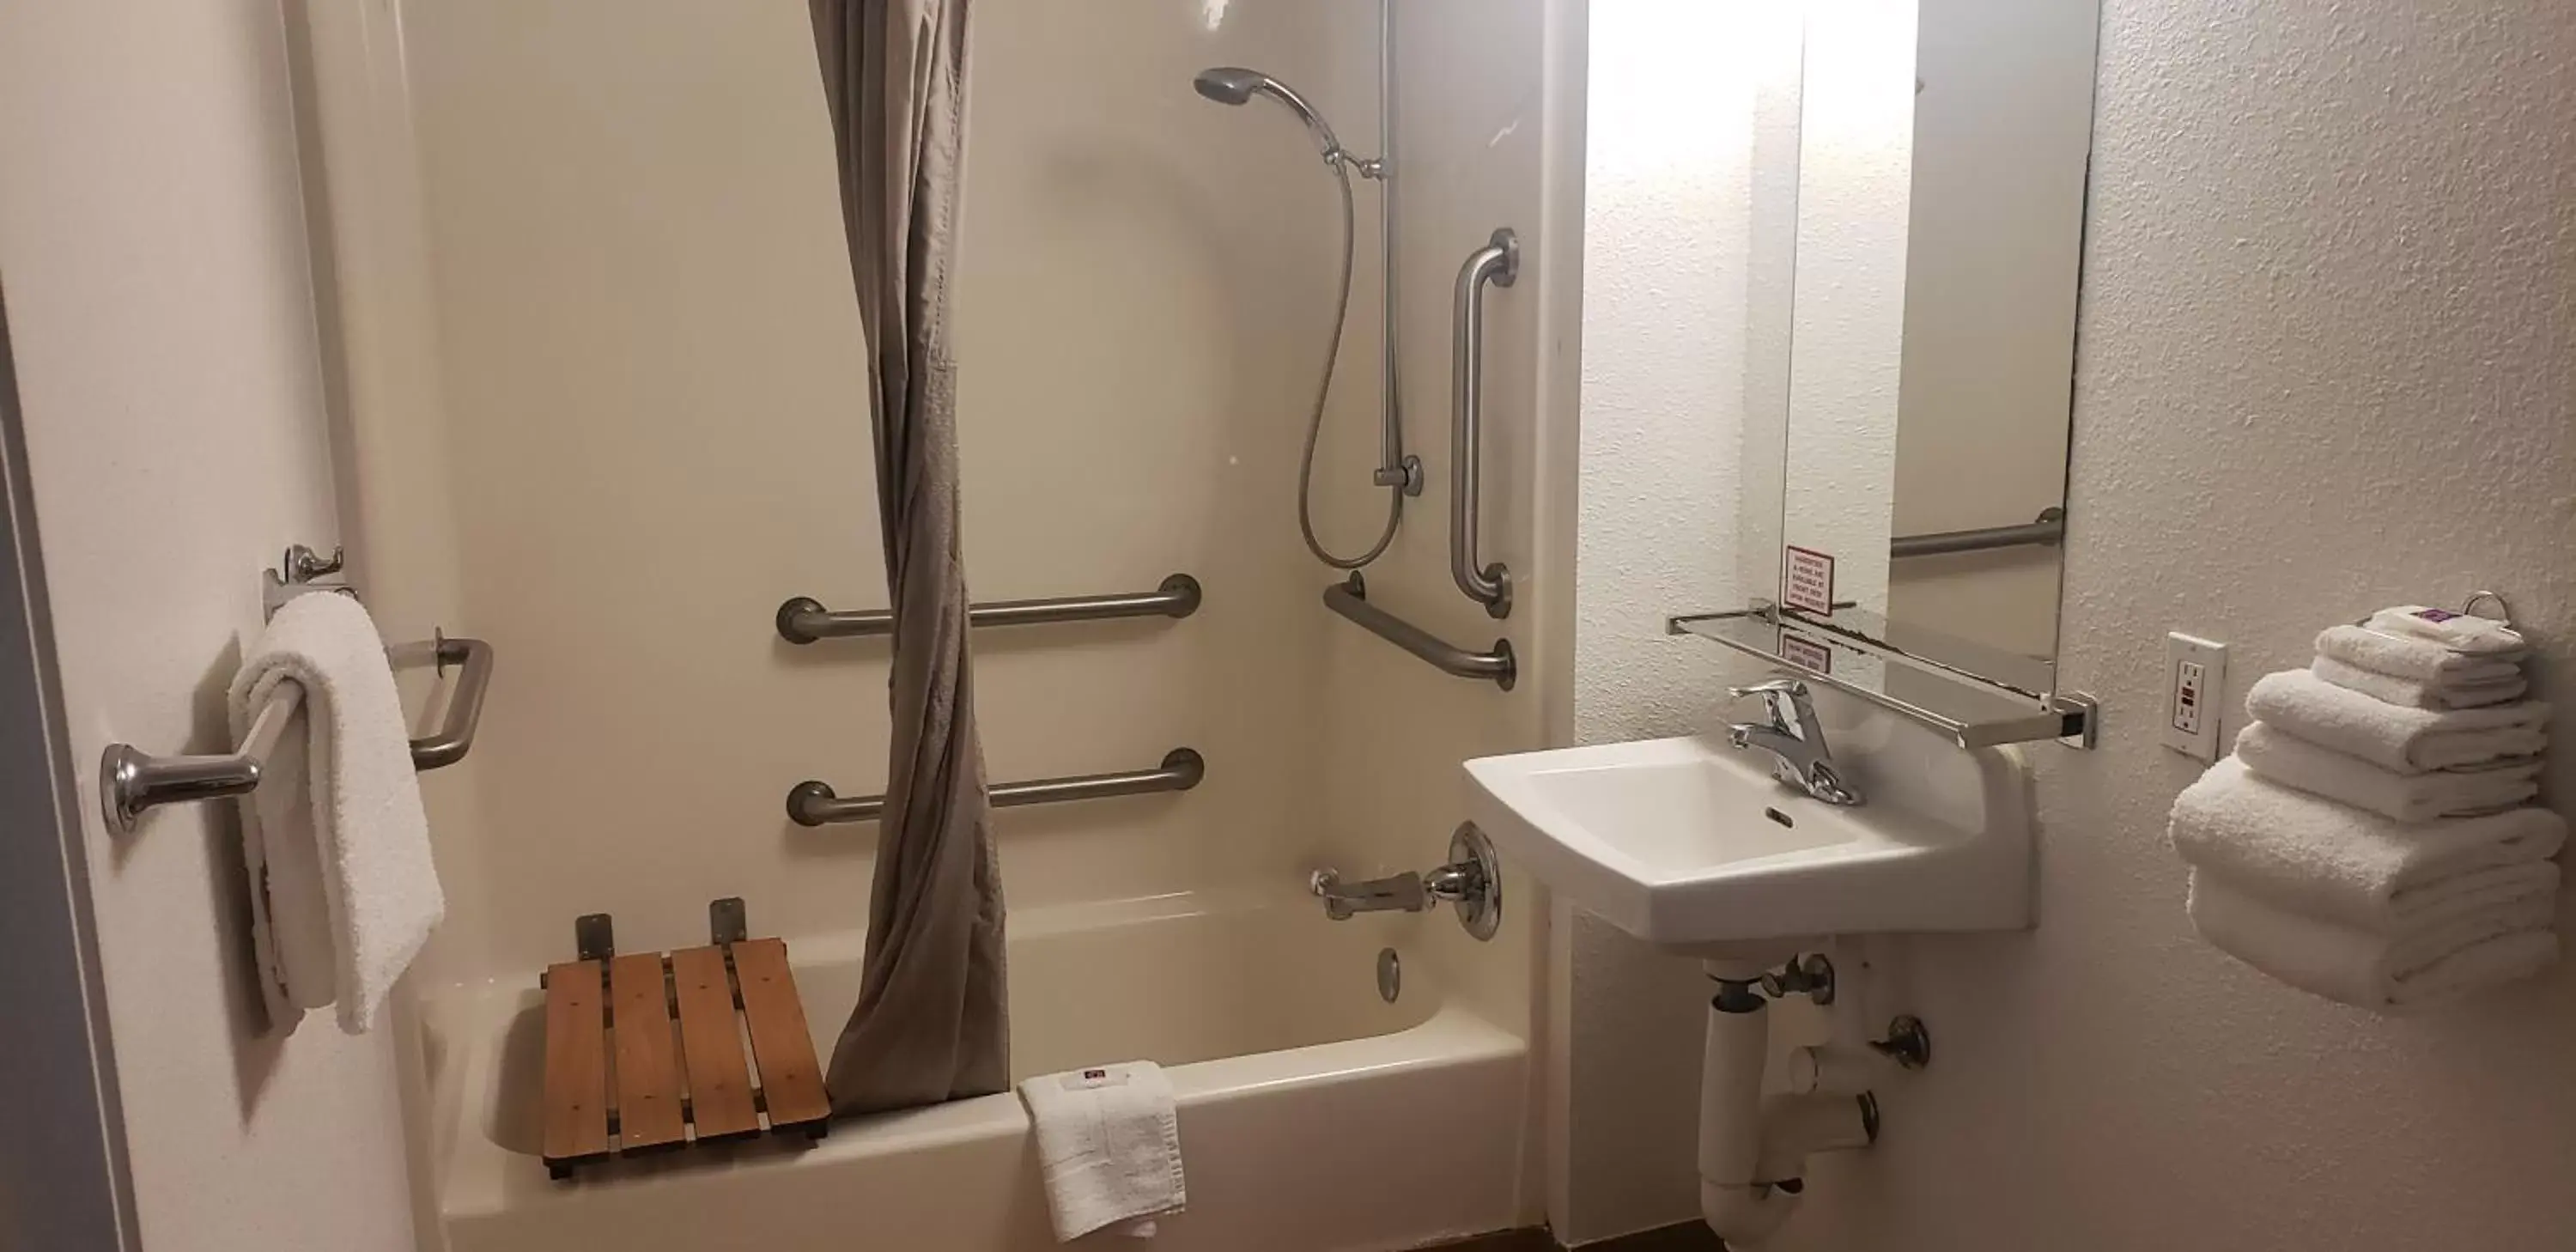 Bathroom in Motel 6-Destin, FL